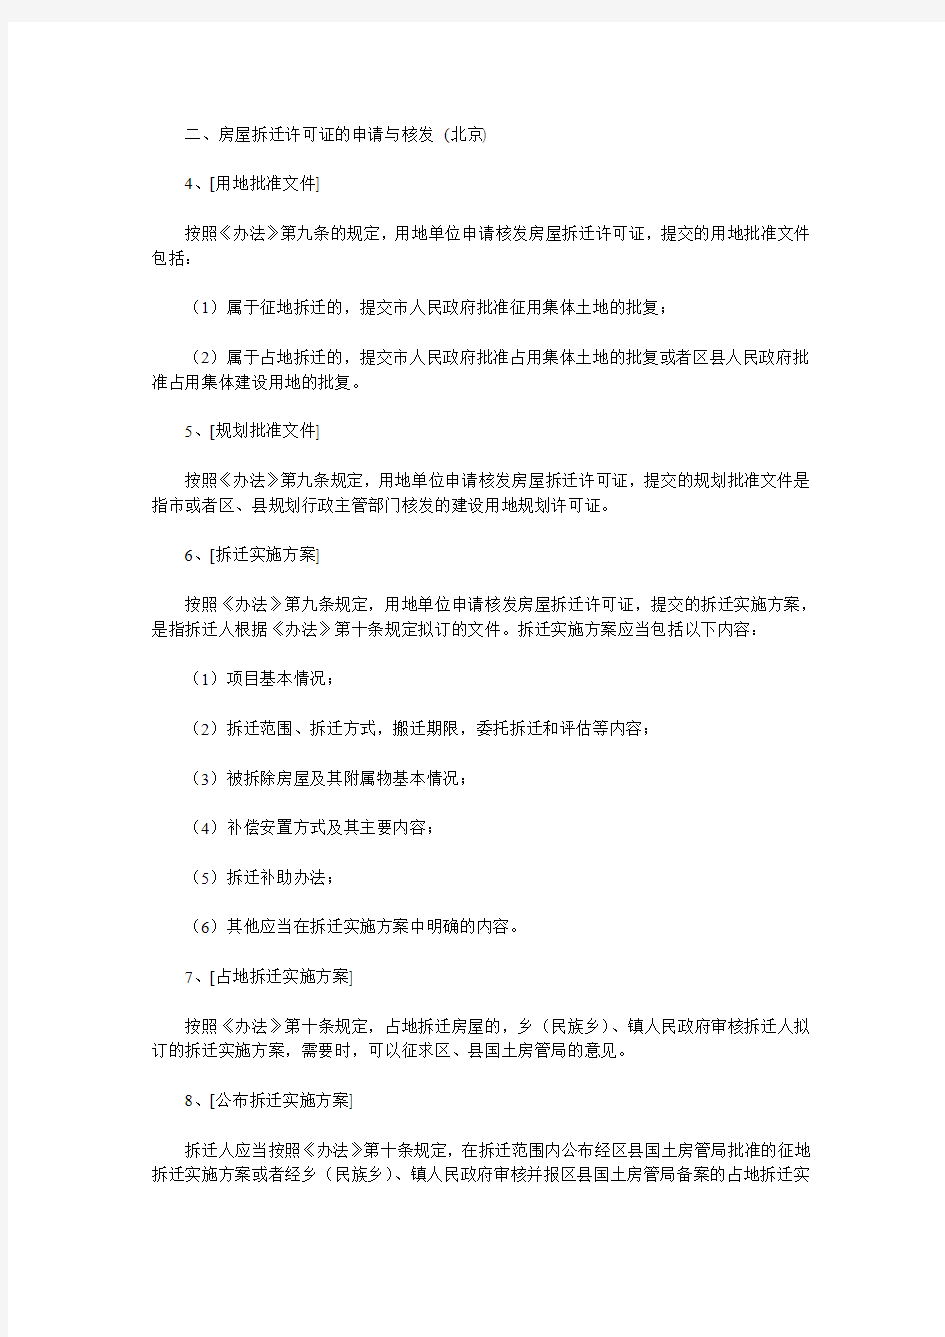 北京市关于印发《北京市集体土地房屋拆迁管理办法实施意见》的通知